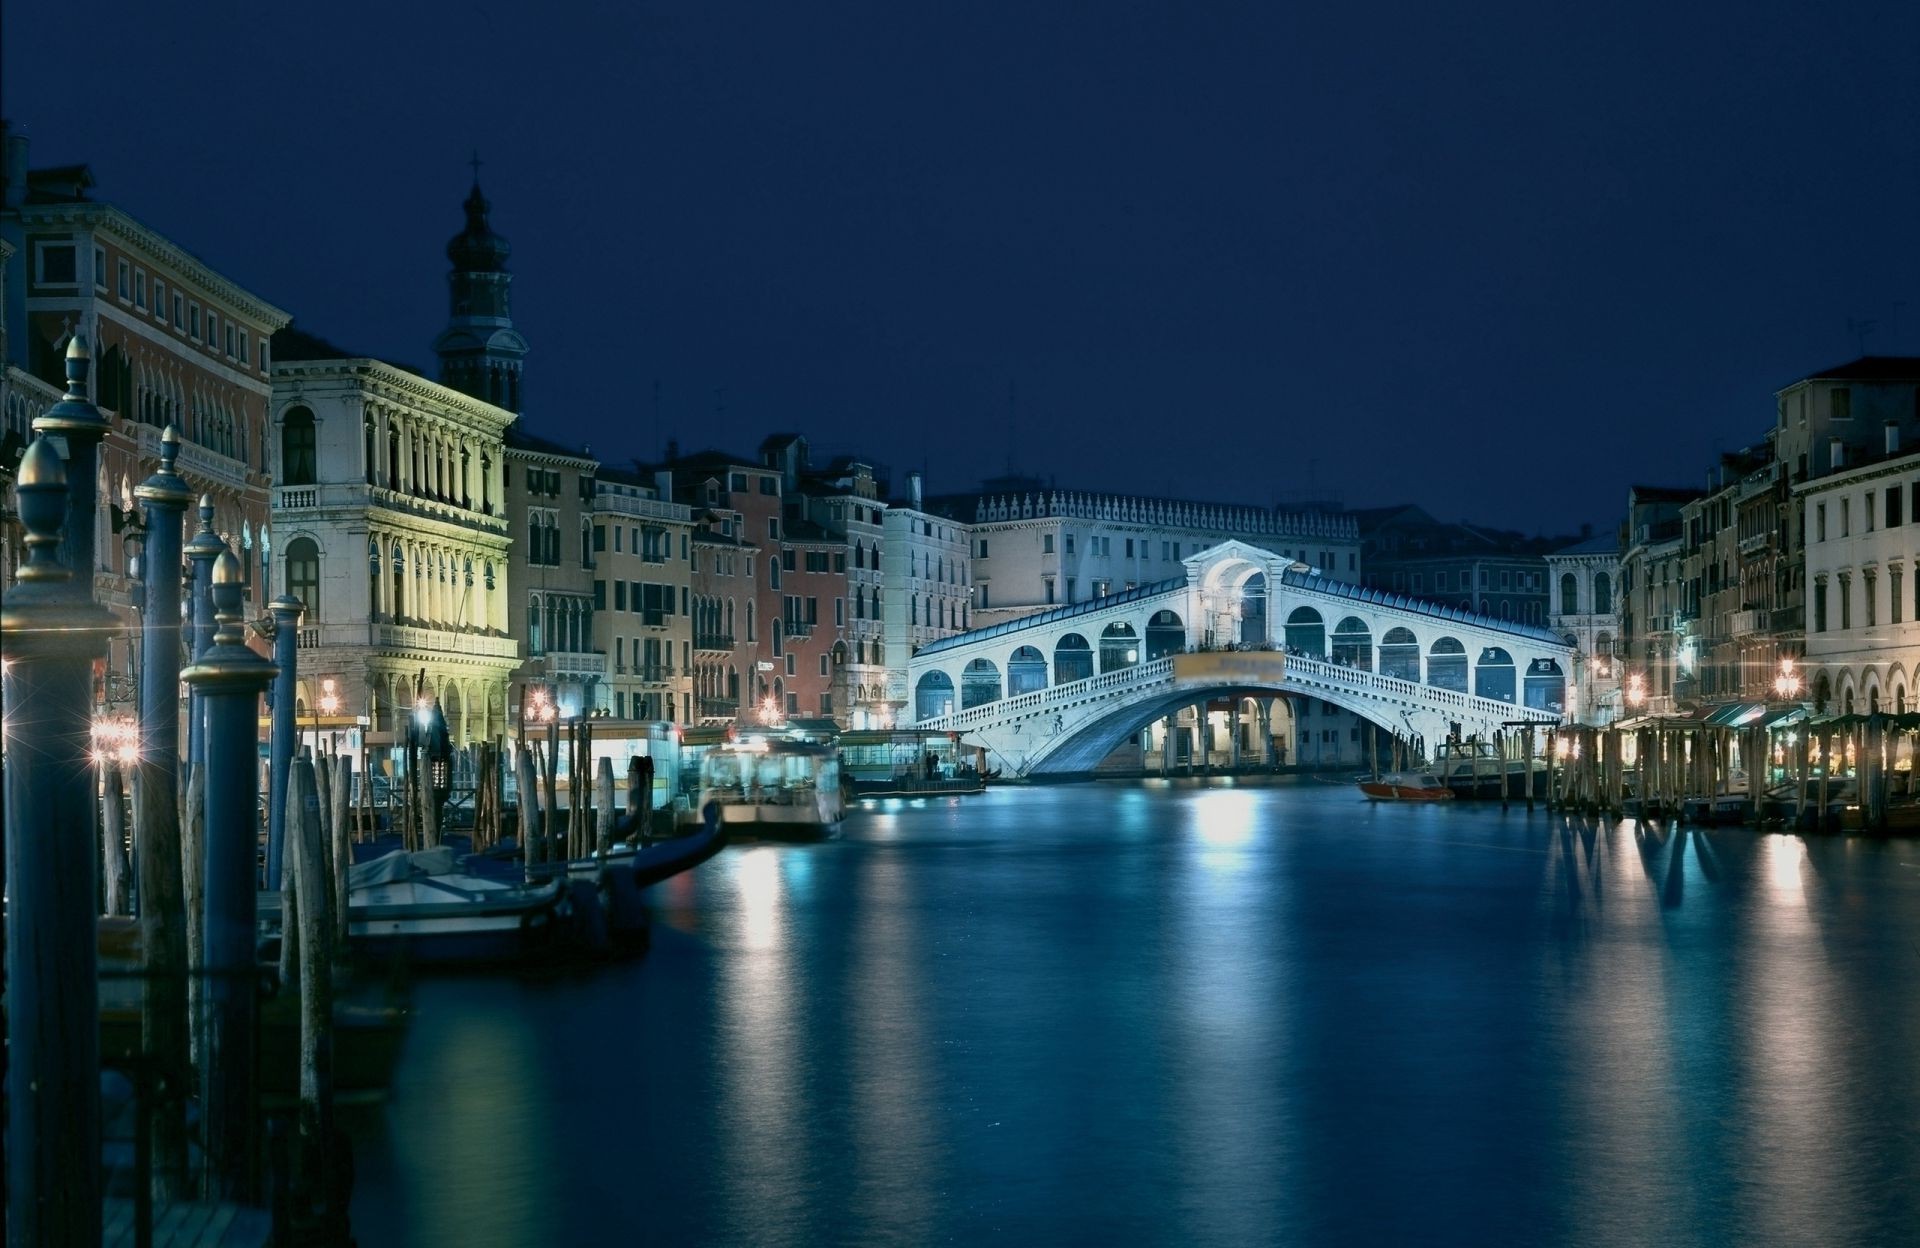 bridges water architecture canal travel bridge city river building reflection outdoors venetian tourism dusk sky gondola